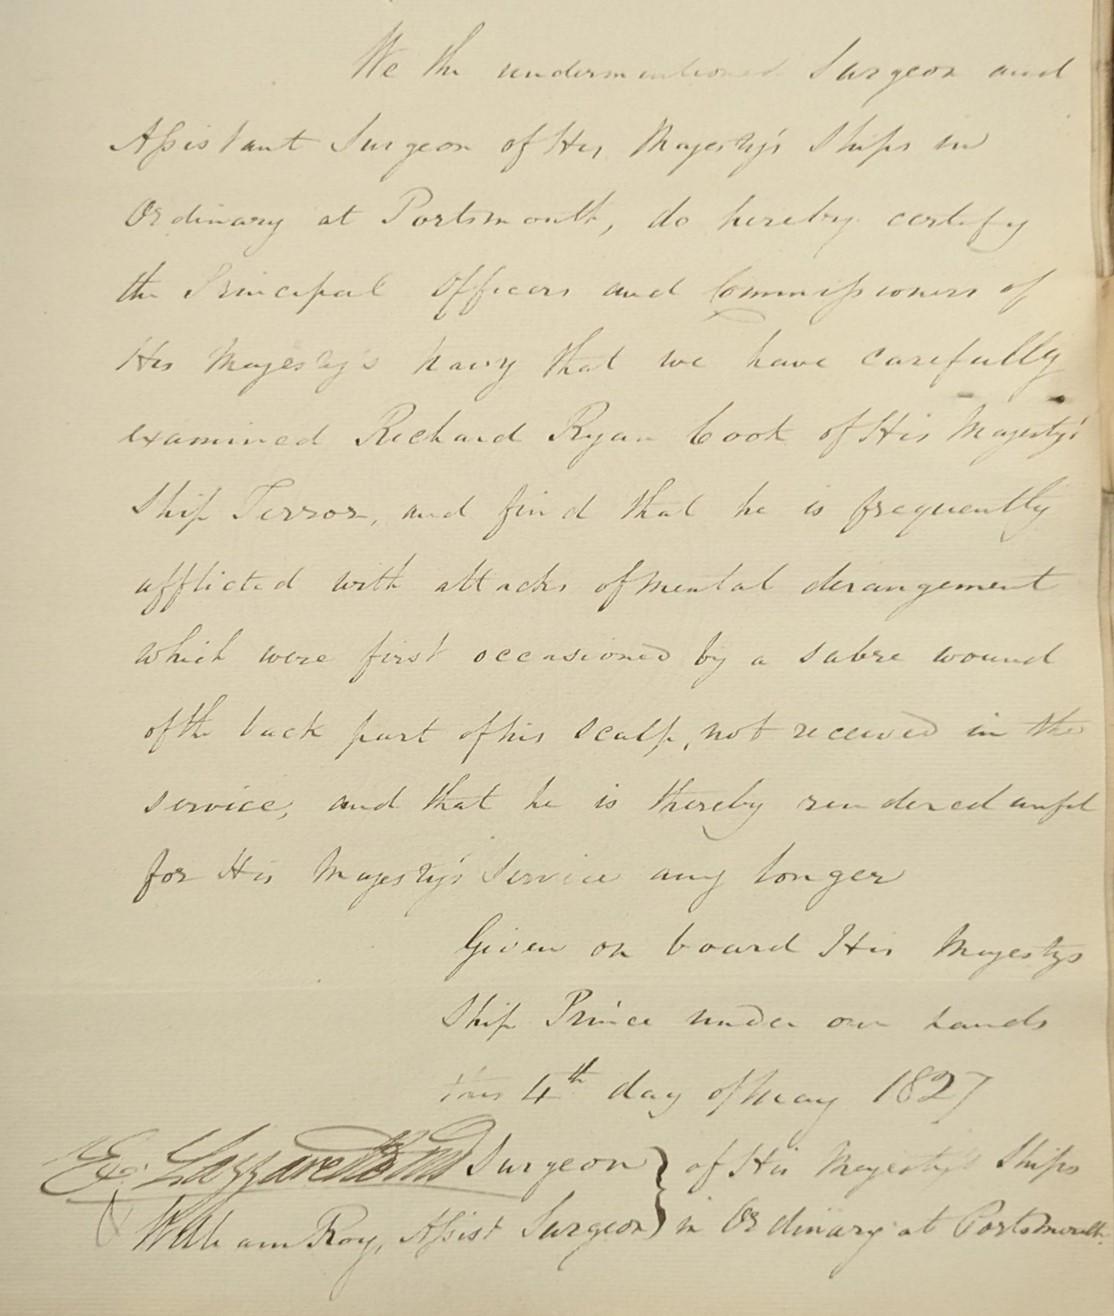 Surgeon report on Richard Ryan, 1827